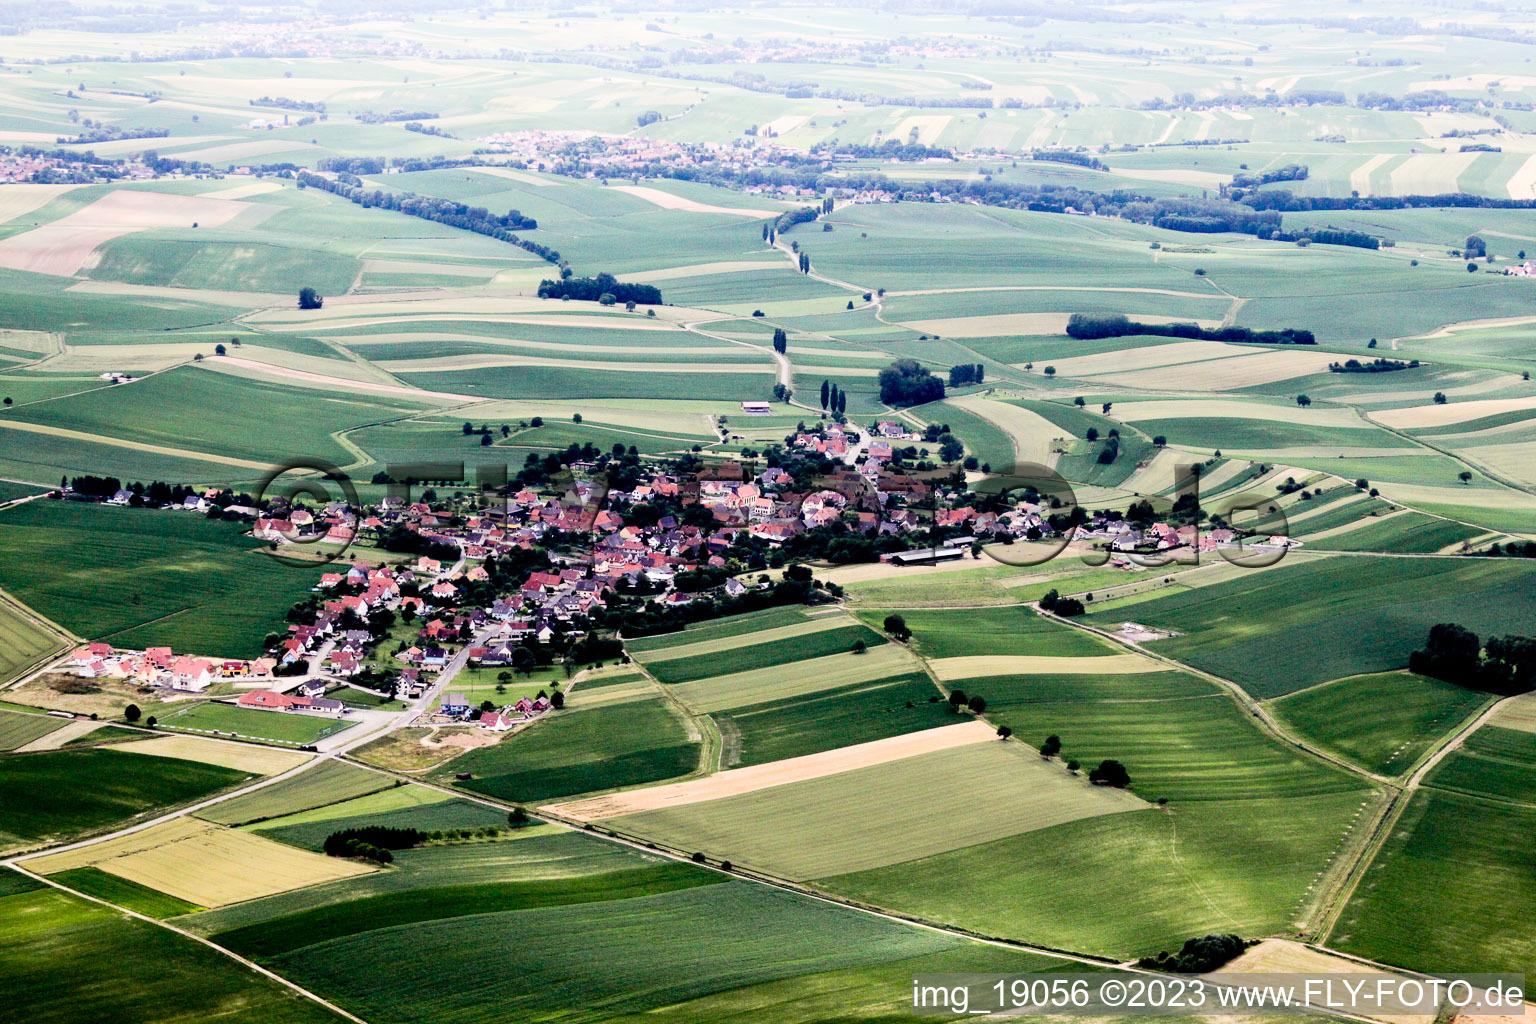 Wintzenbach dans le département Bas Rhin, France hors des airs